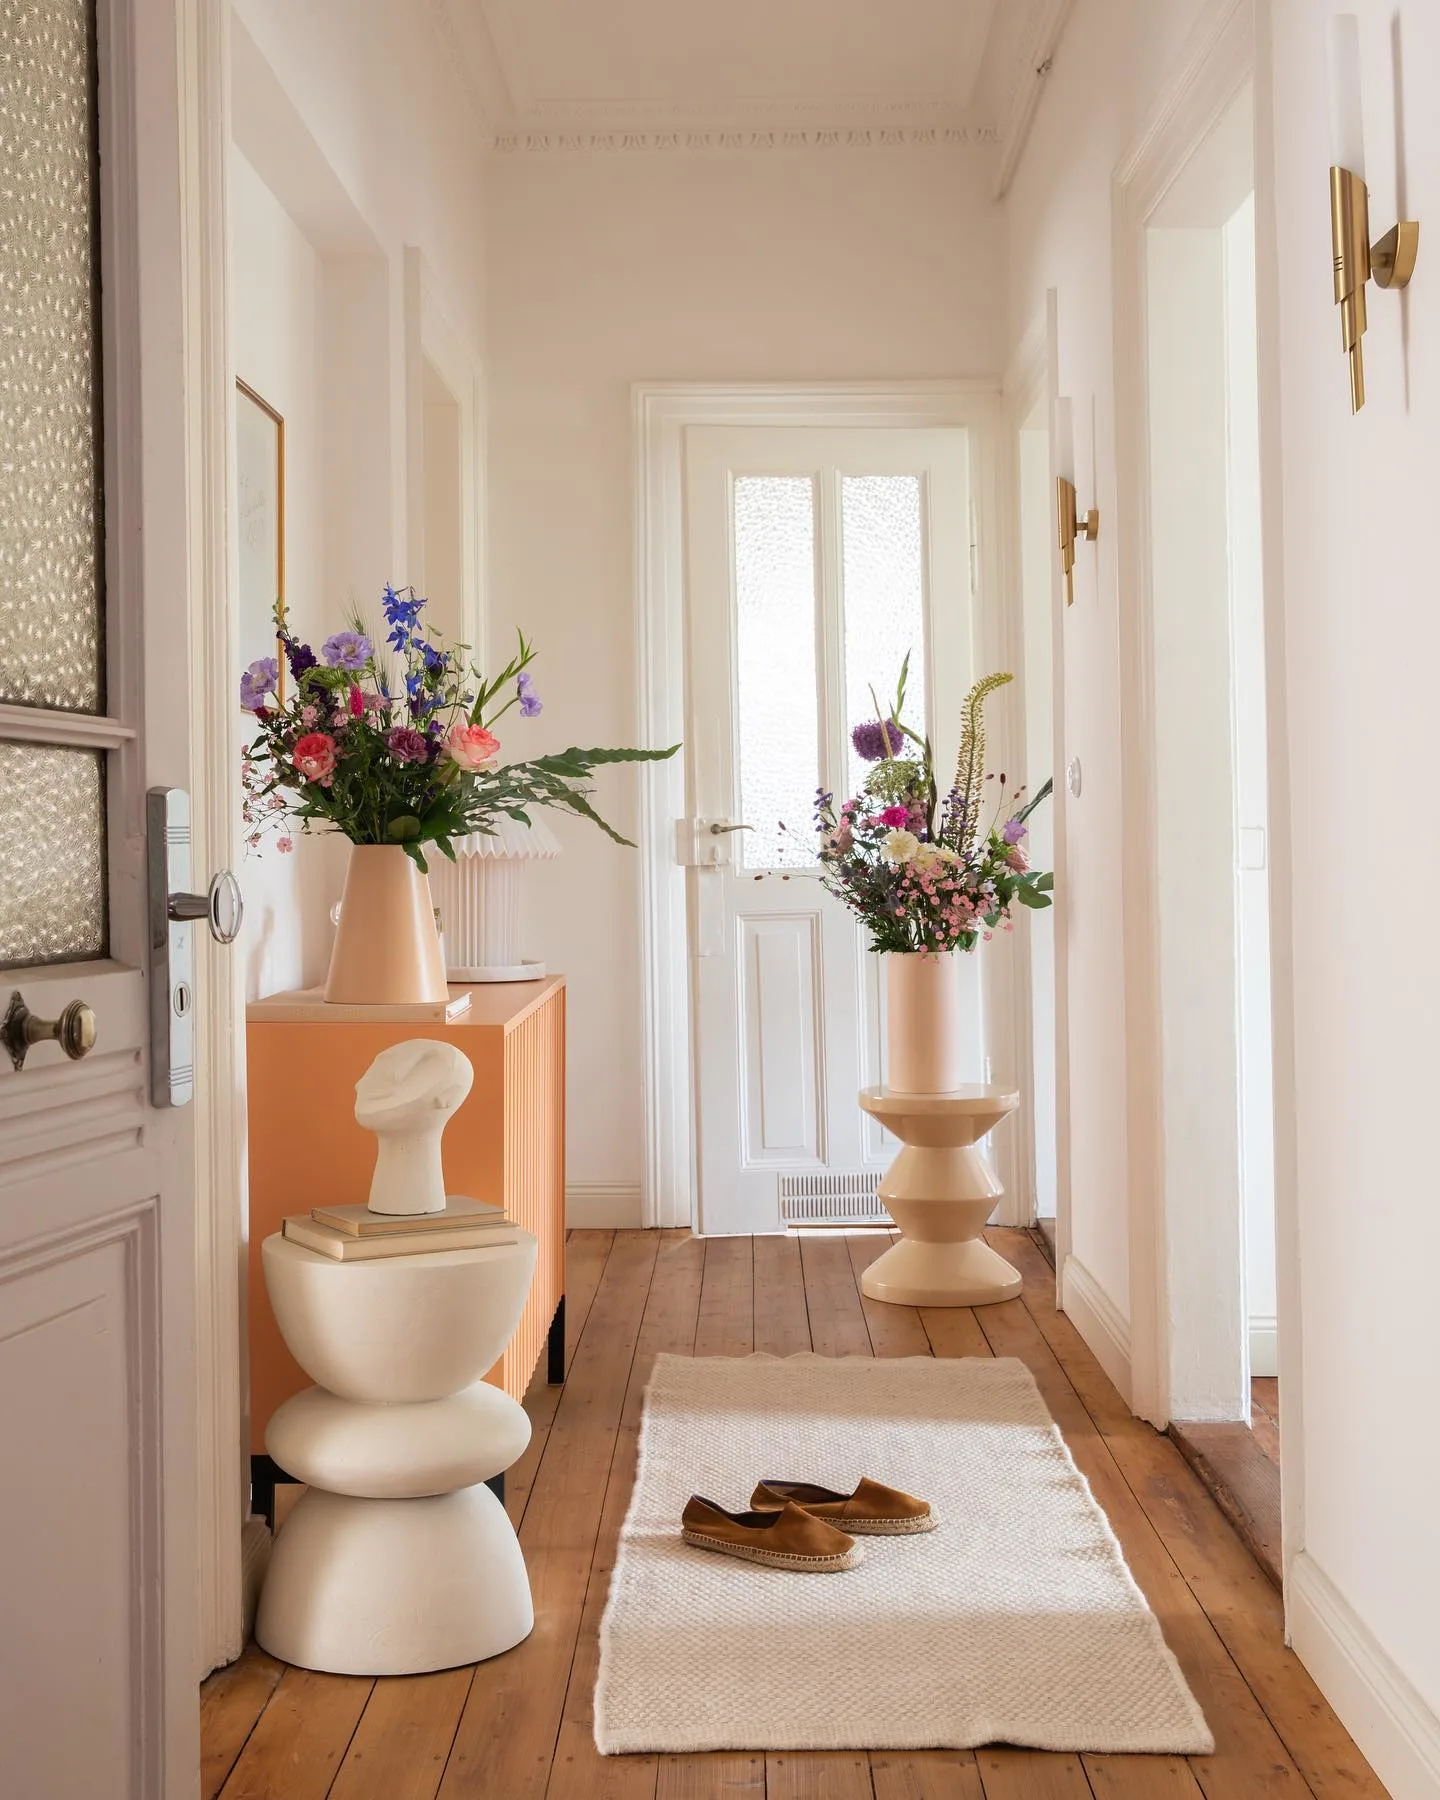 Einladend gestalteter Flur mit hellem Teppichläufer auf braunem Parkettboden, modernen Beistelltischen und großen Vasen mit frischen Schnittblumen